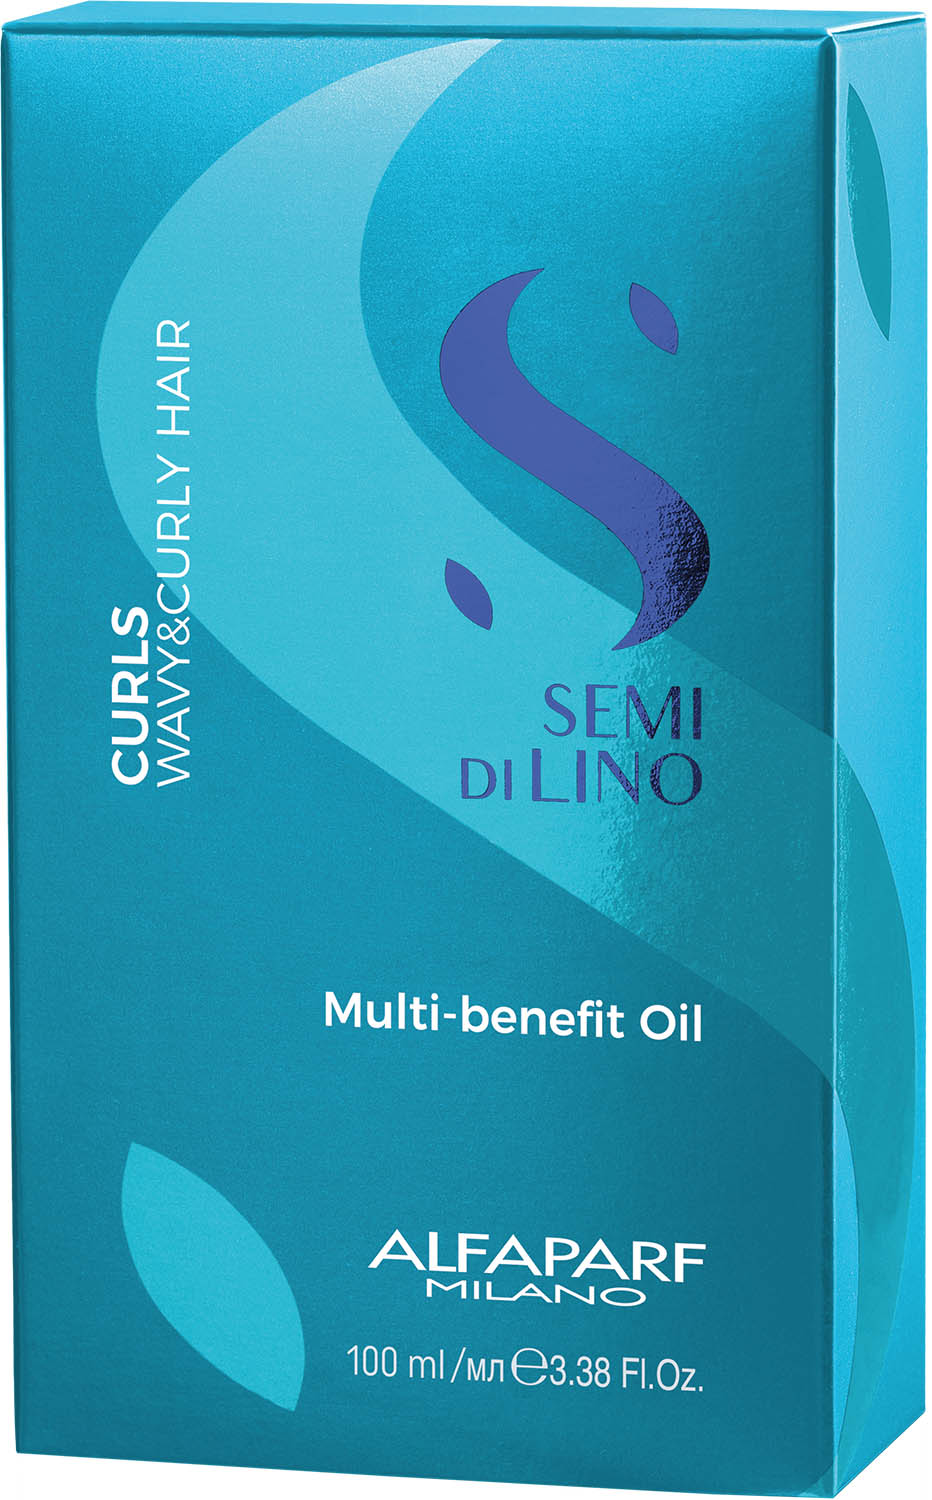  Alfaparf Milano Semi di Lino Curls Multi-Benefit Oil 100 ml 